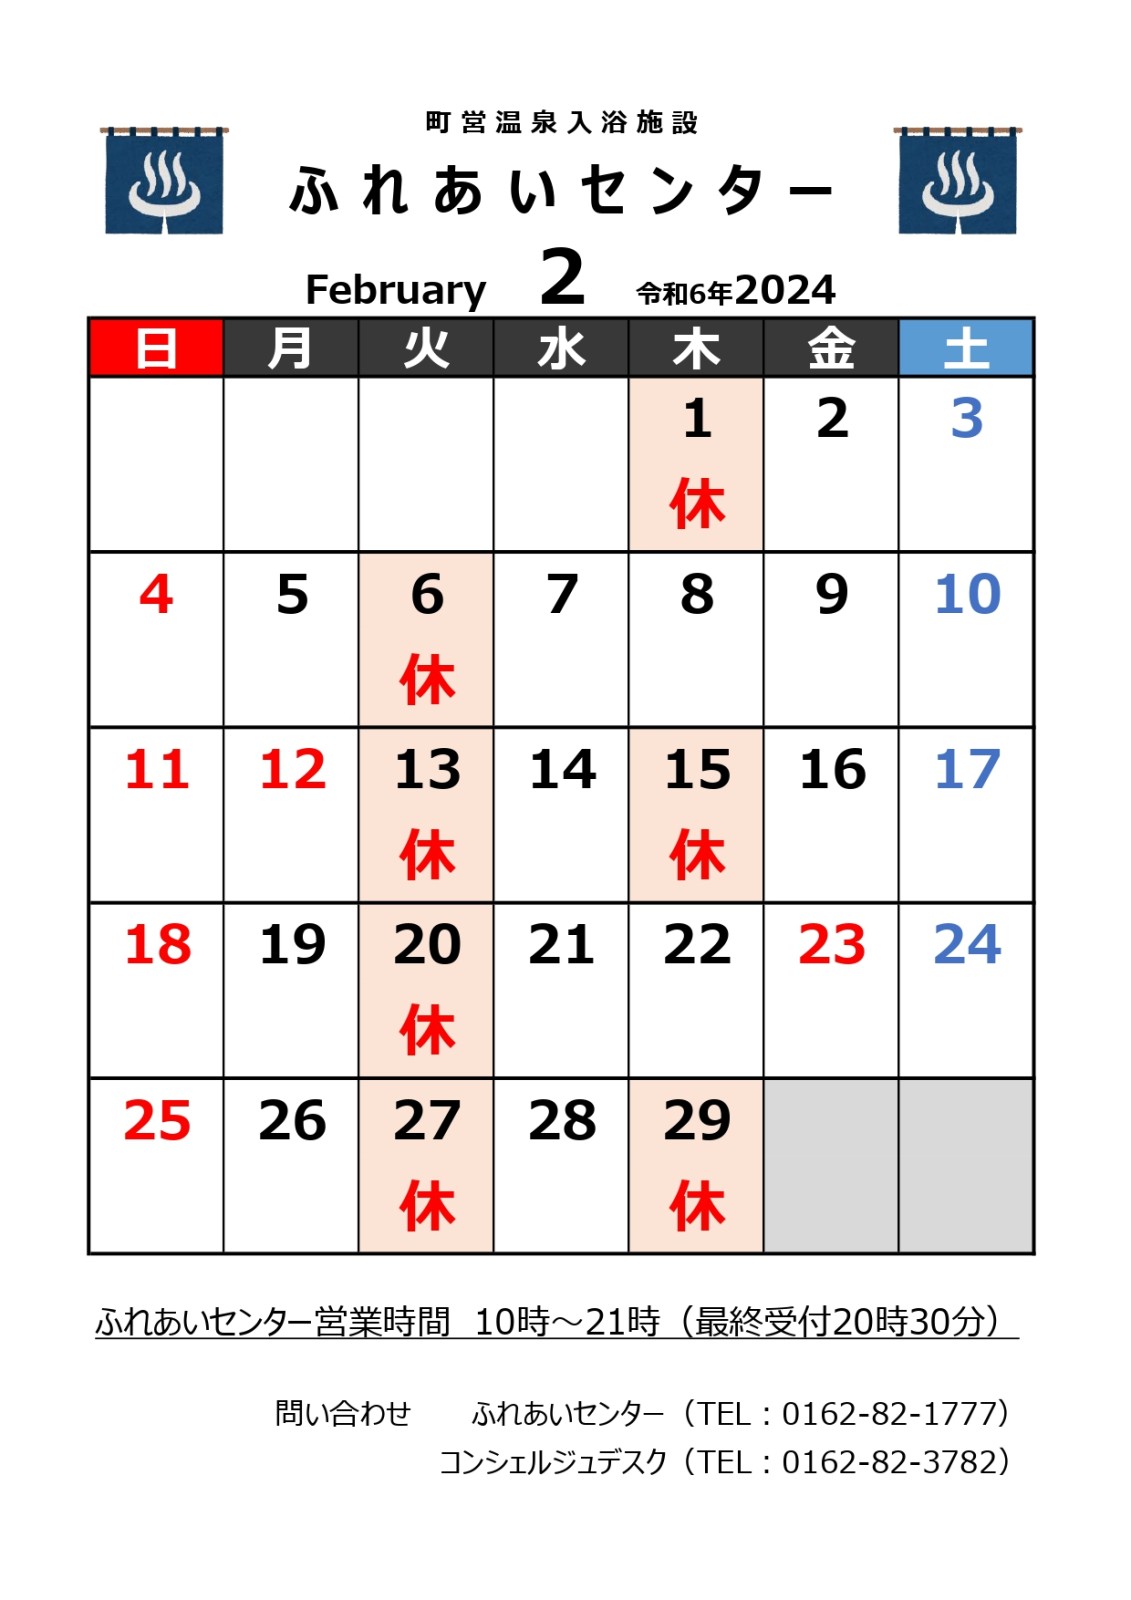 【ふれあいセンター】2月の営業について